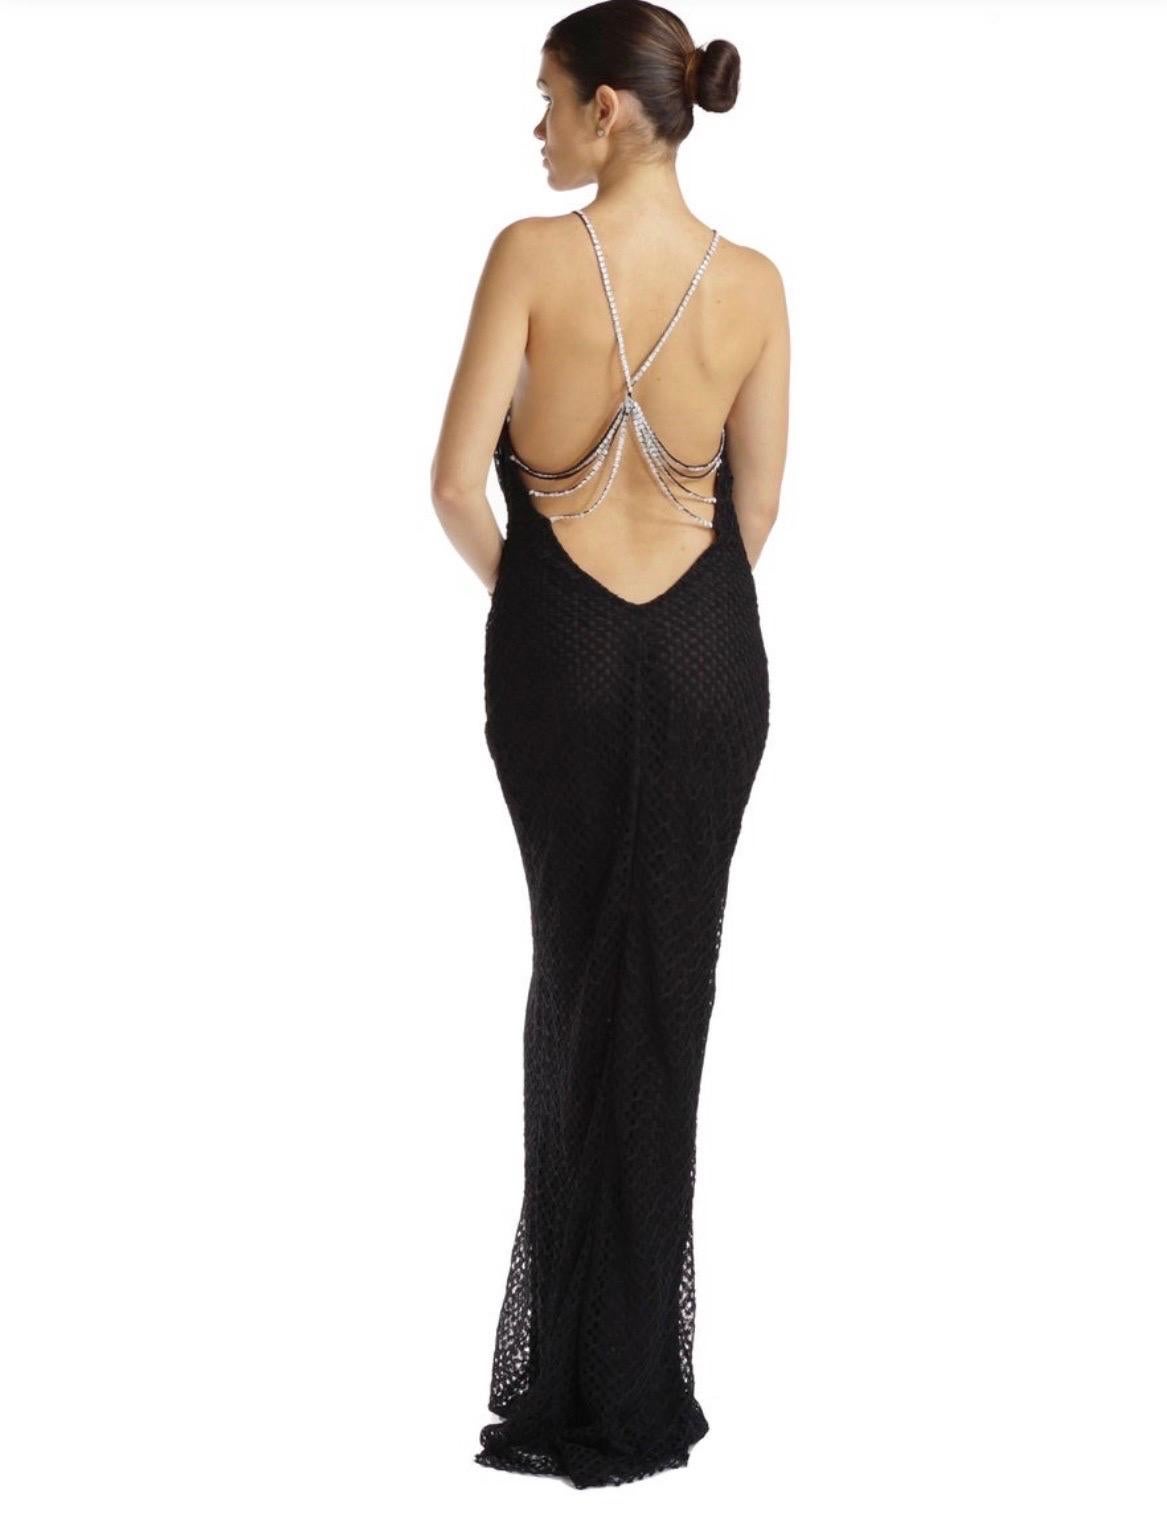 2002 Vintage Gianni Versace Couture
Taille italienne 46 - US 8-10 (le tissu est très extensible et épouse toutes les courbes)
Robe en dentelle noire avec cristaux.
Il est totalement romantique, d'une beauté époustouflante, assurément féminin et